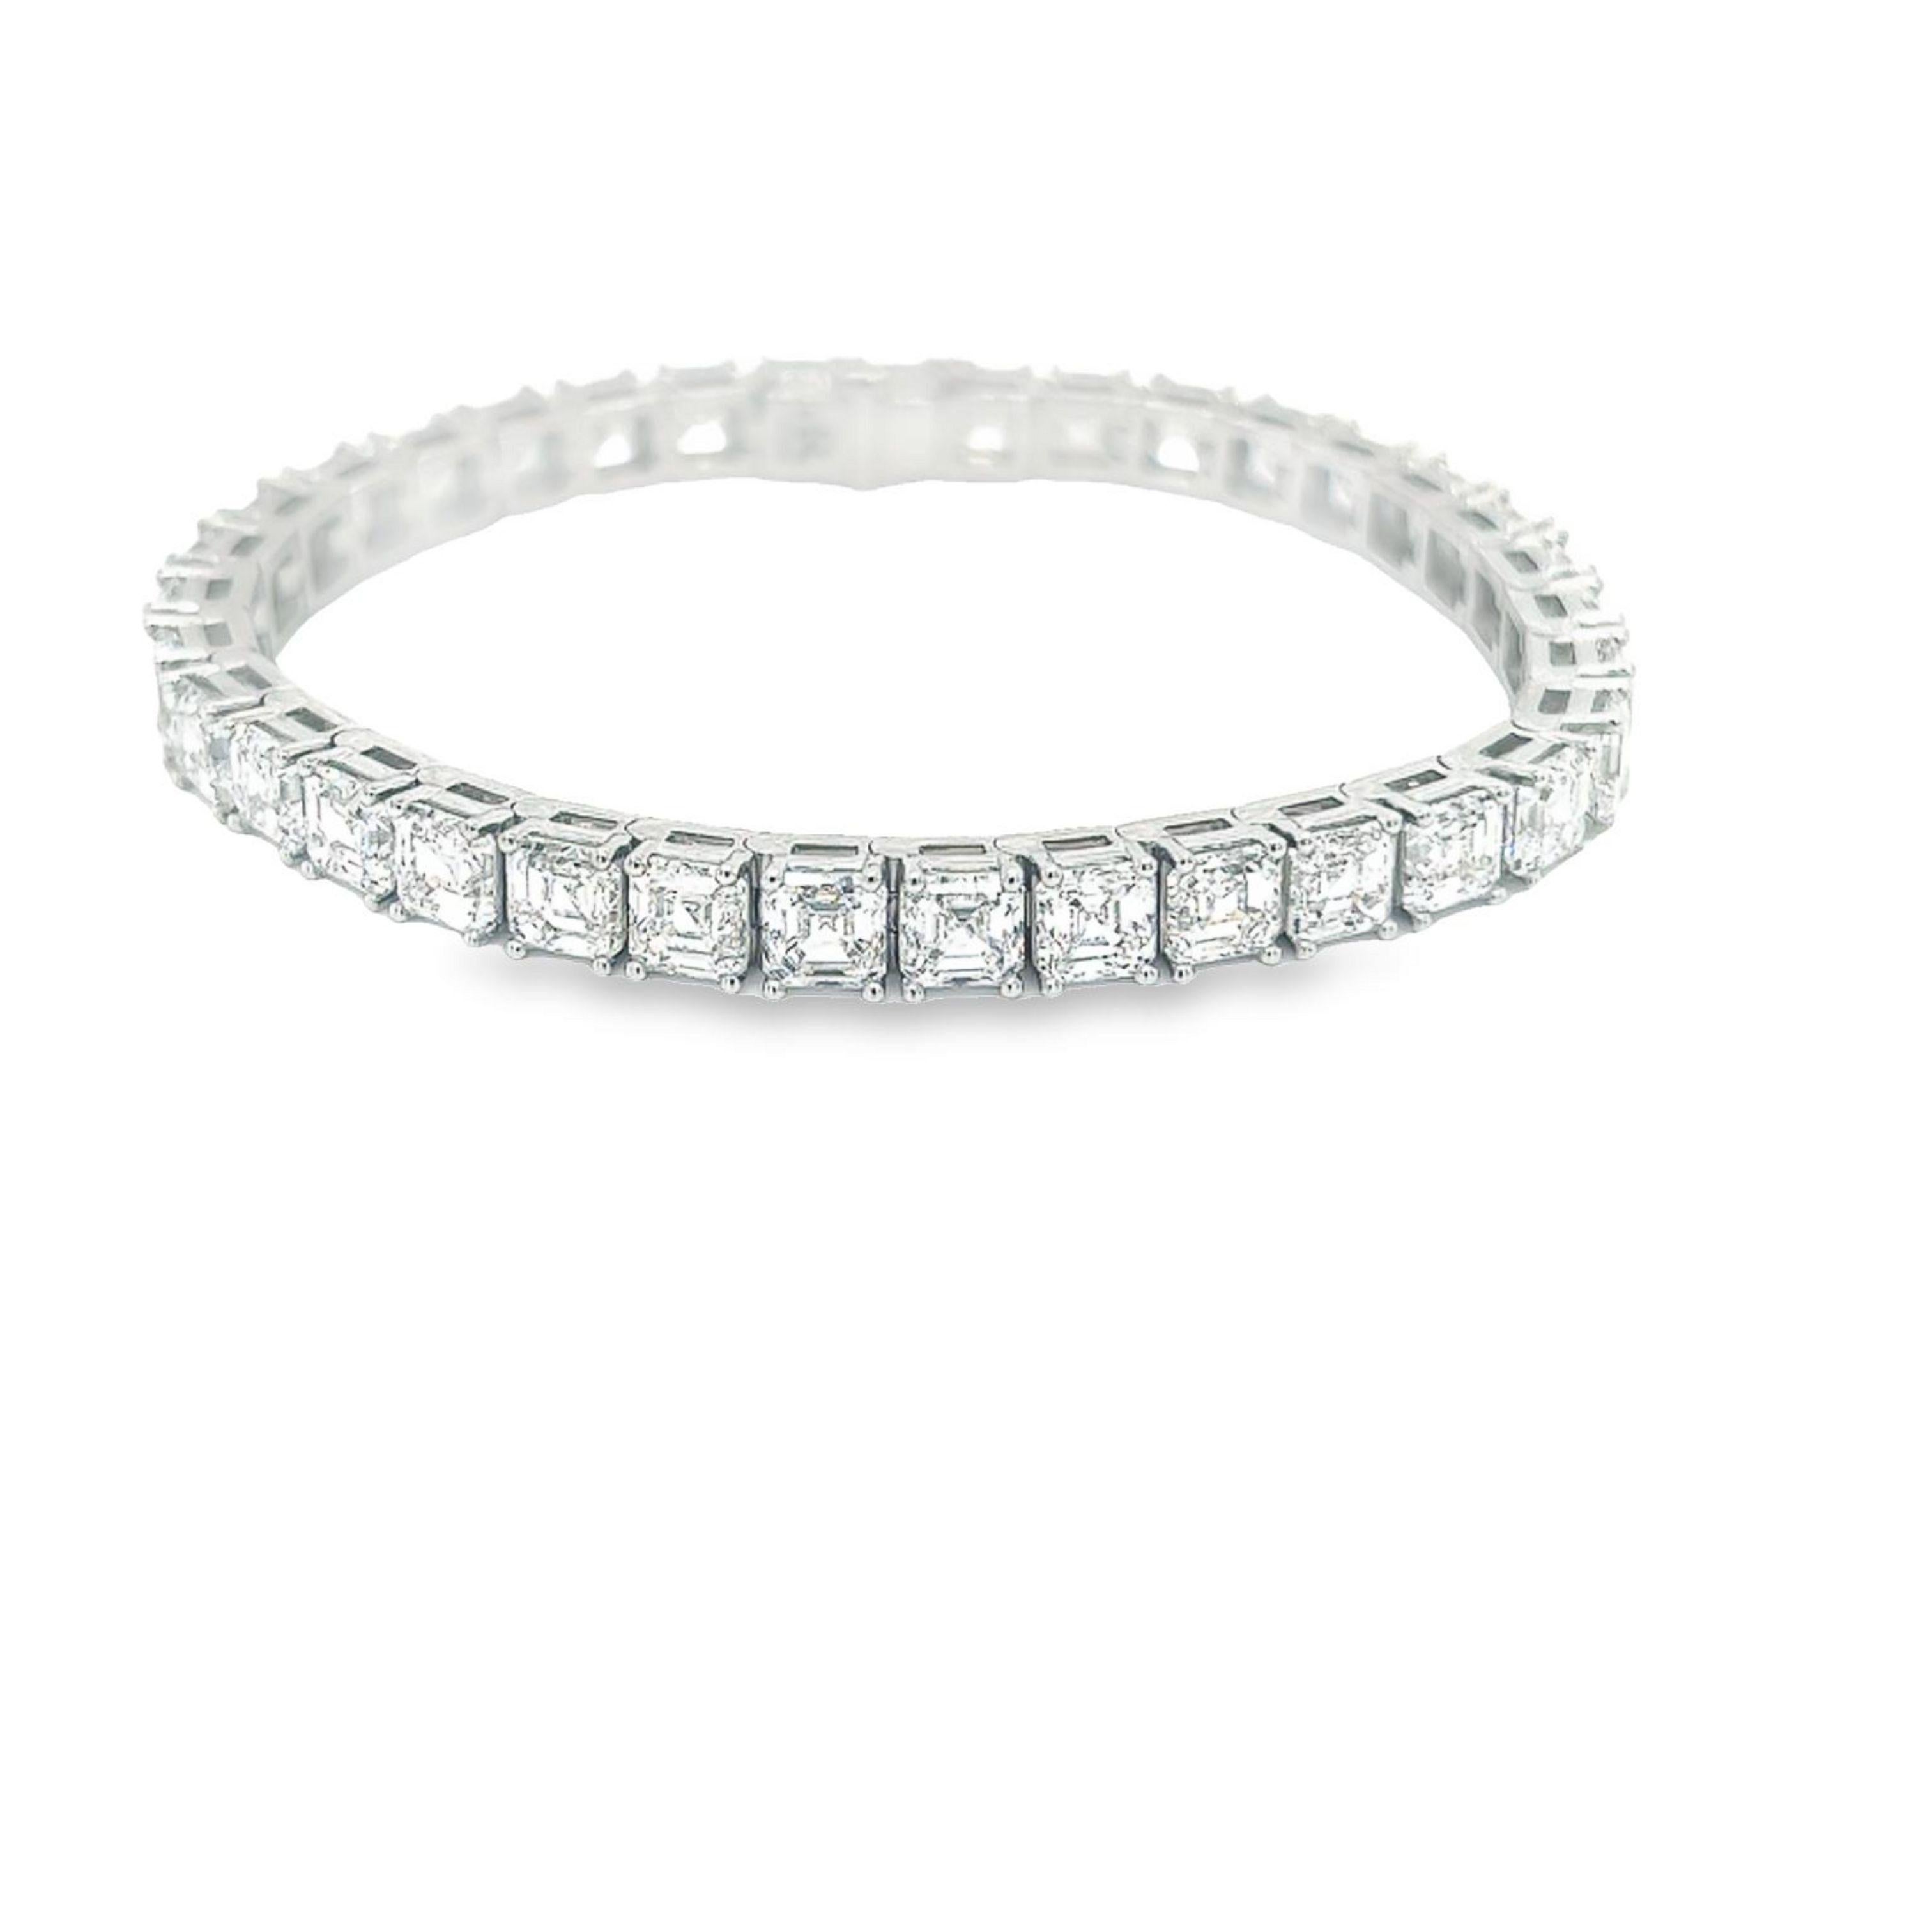 Rosenberg Diamonds and Co. Bracelet de tennis en diamants de 7 pouces, taille Asscher, d'un poids total de 24,66 carats, serti en platine. Ce magnifique bracelet en ligne droite est composé de .70 carats, de couleur D-F et de pureté VS2-IF. Les 35